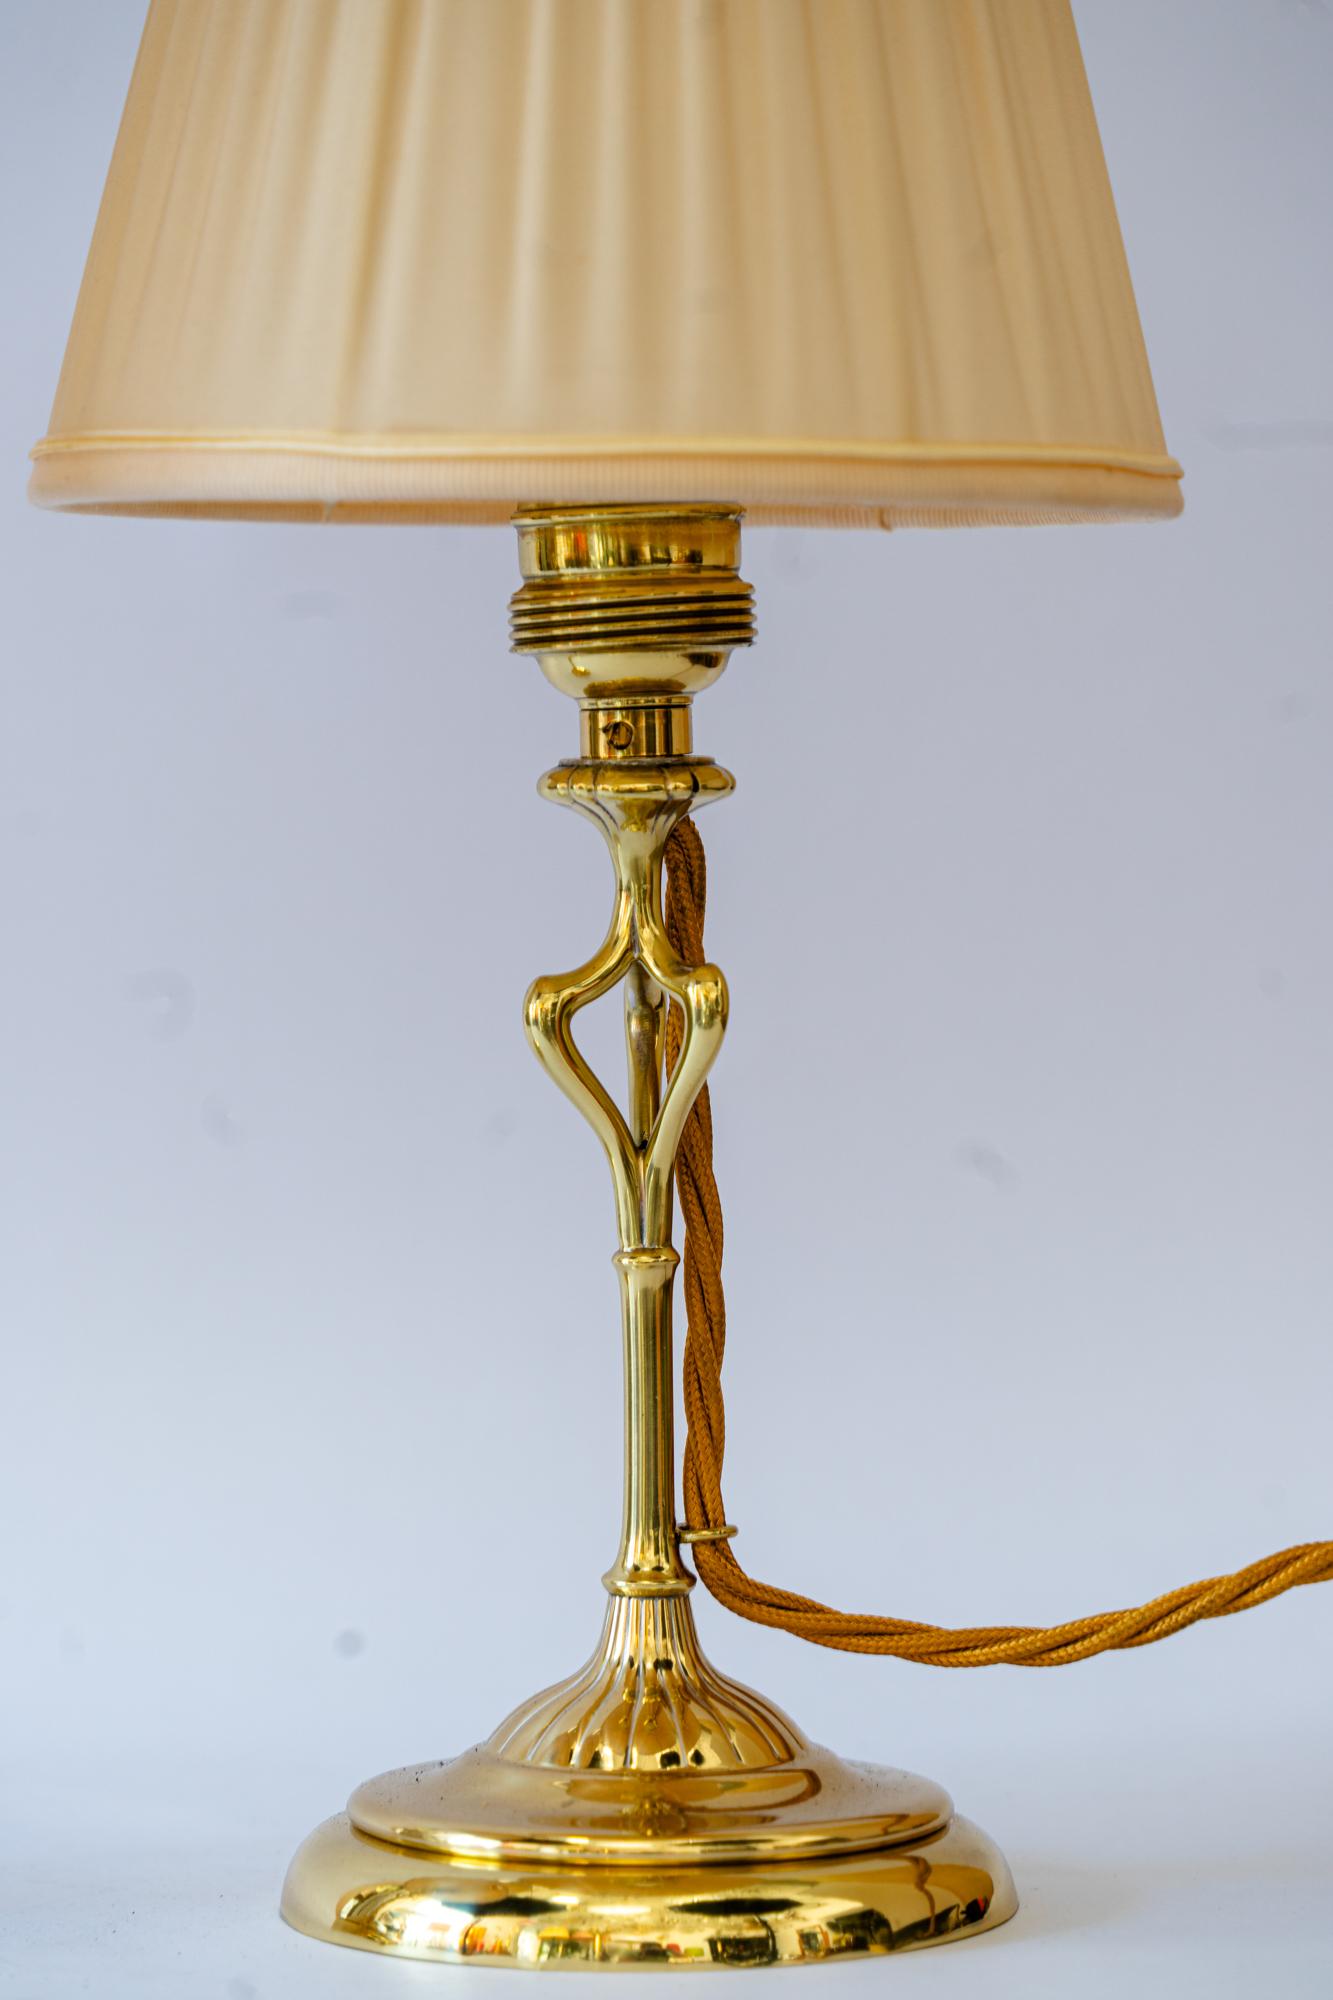 2 lampes de table Art Deco vienne vers 1920
Polis et émaillés au four
Les stores en tissu sont remplacés (neufs).